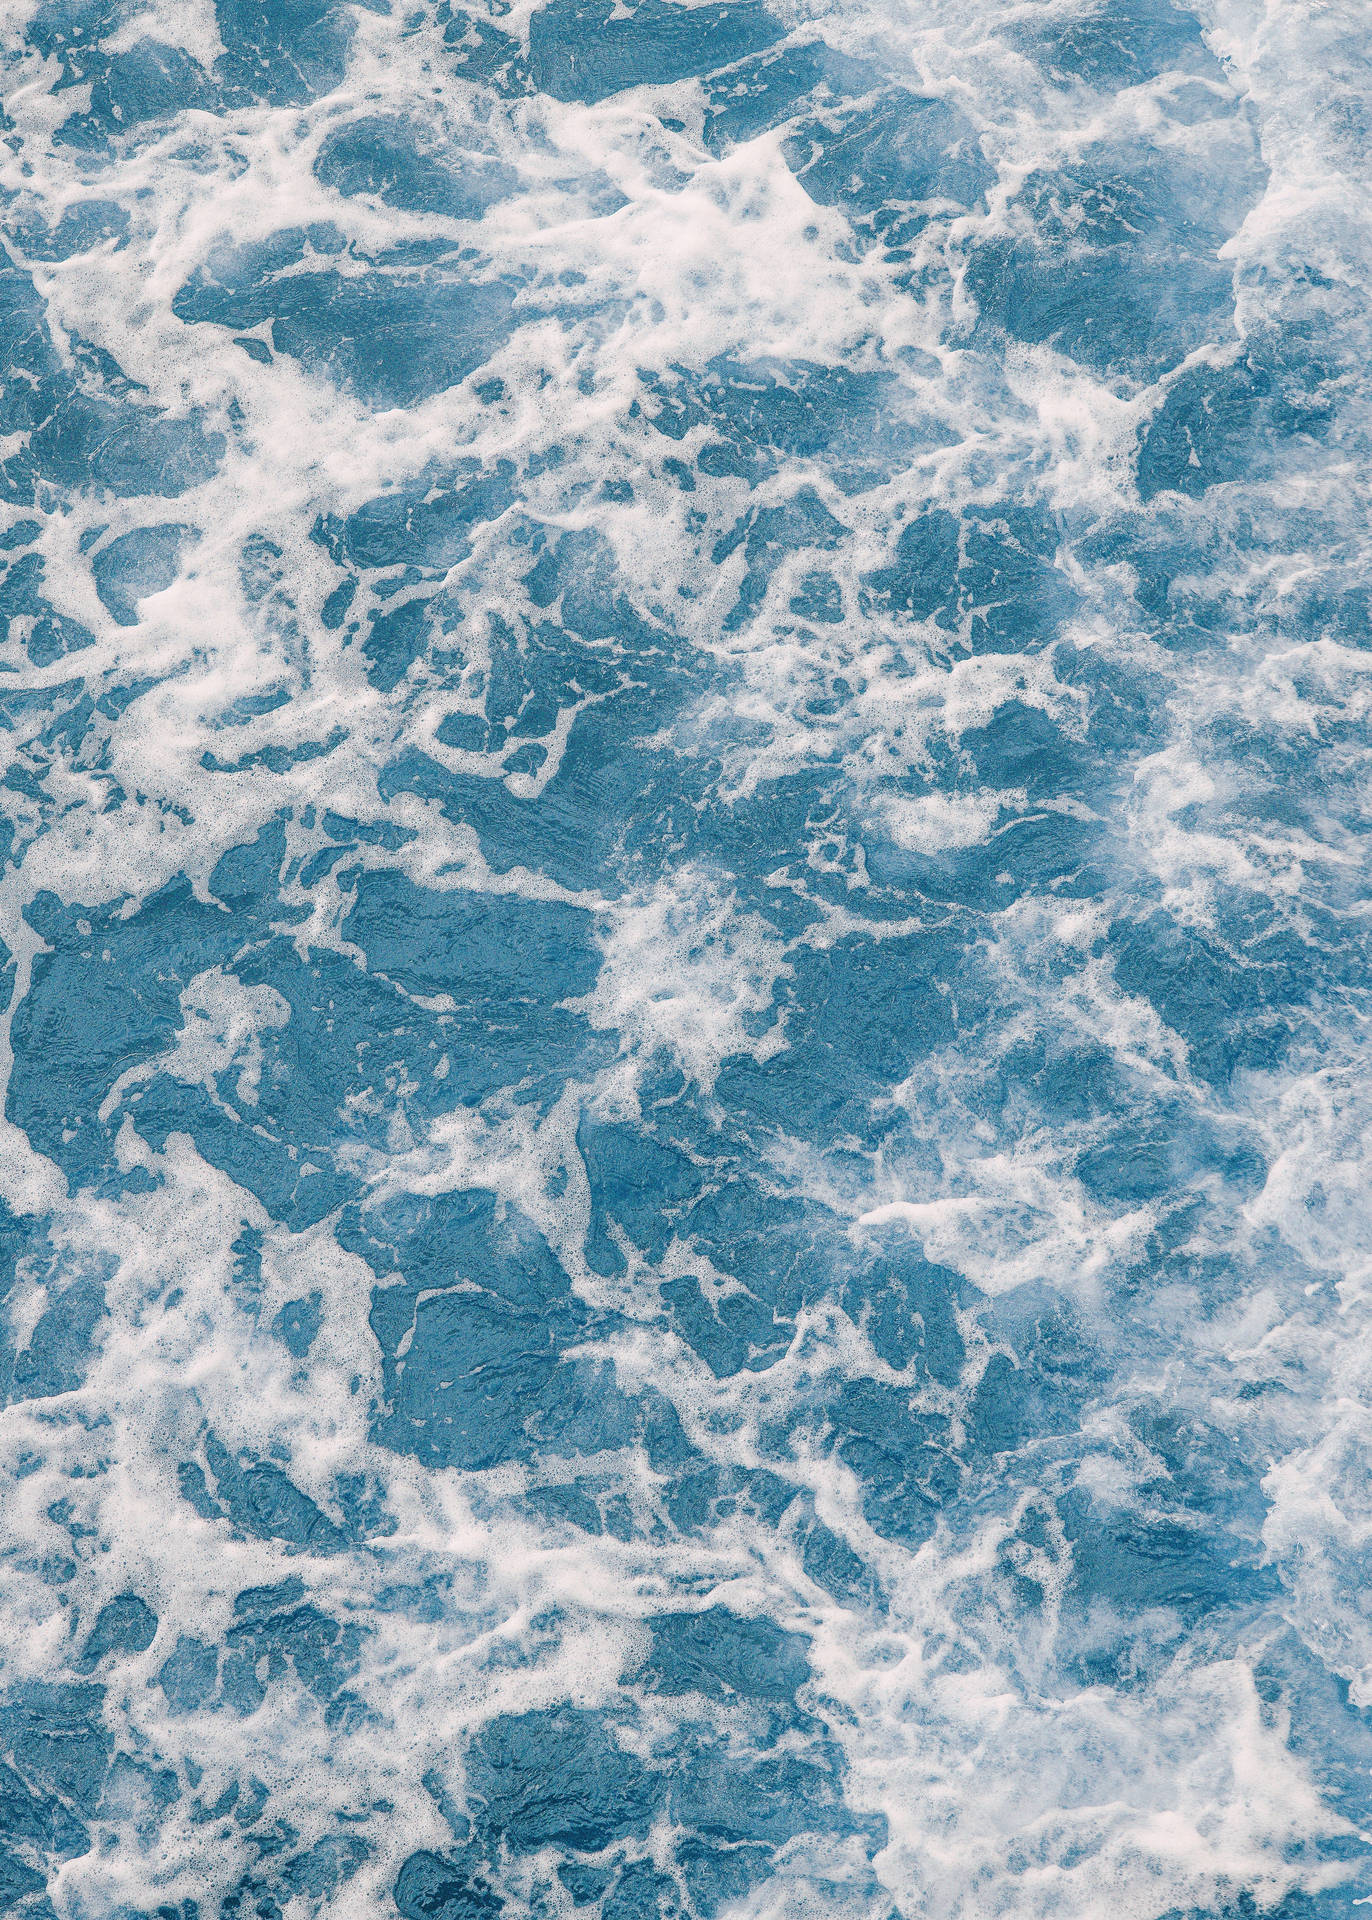 Fondogenial De Mar Espumoso. Fondo de pantalla